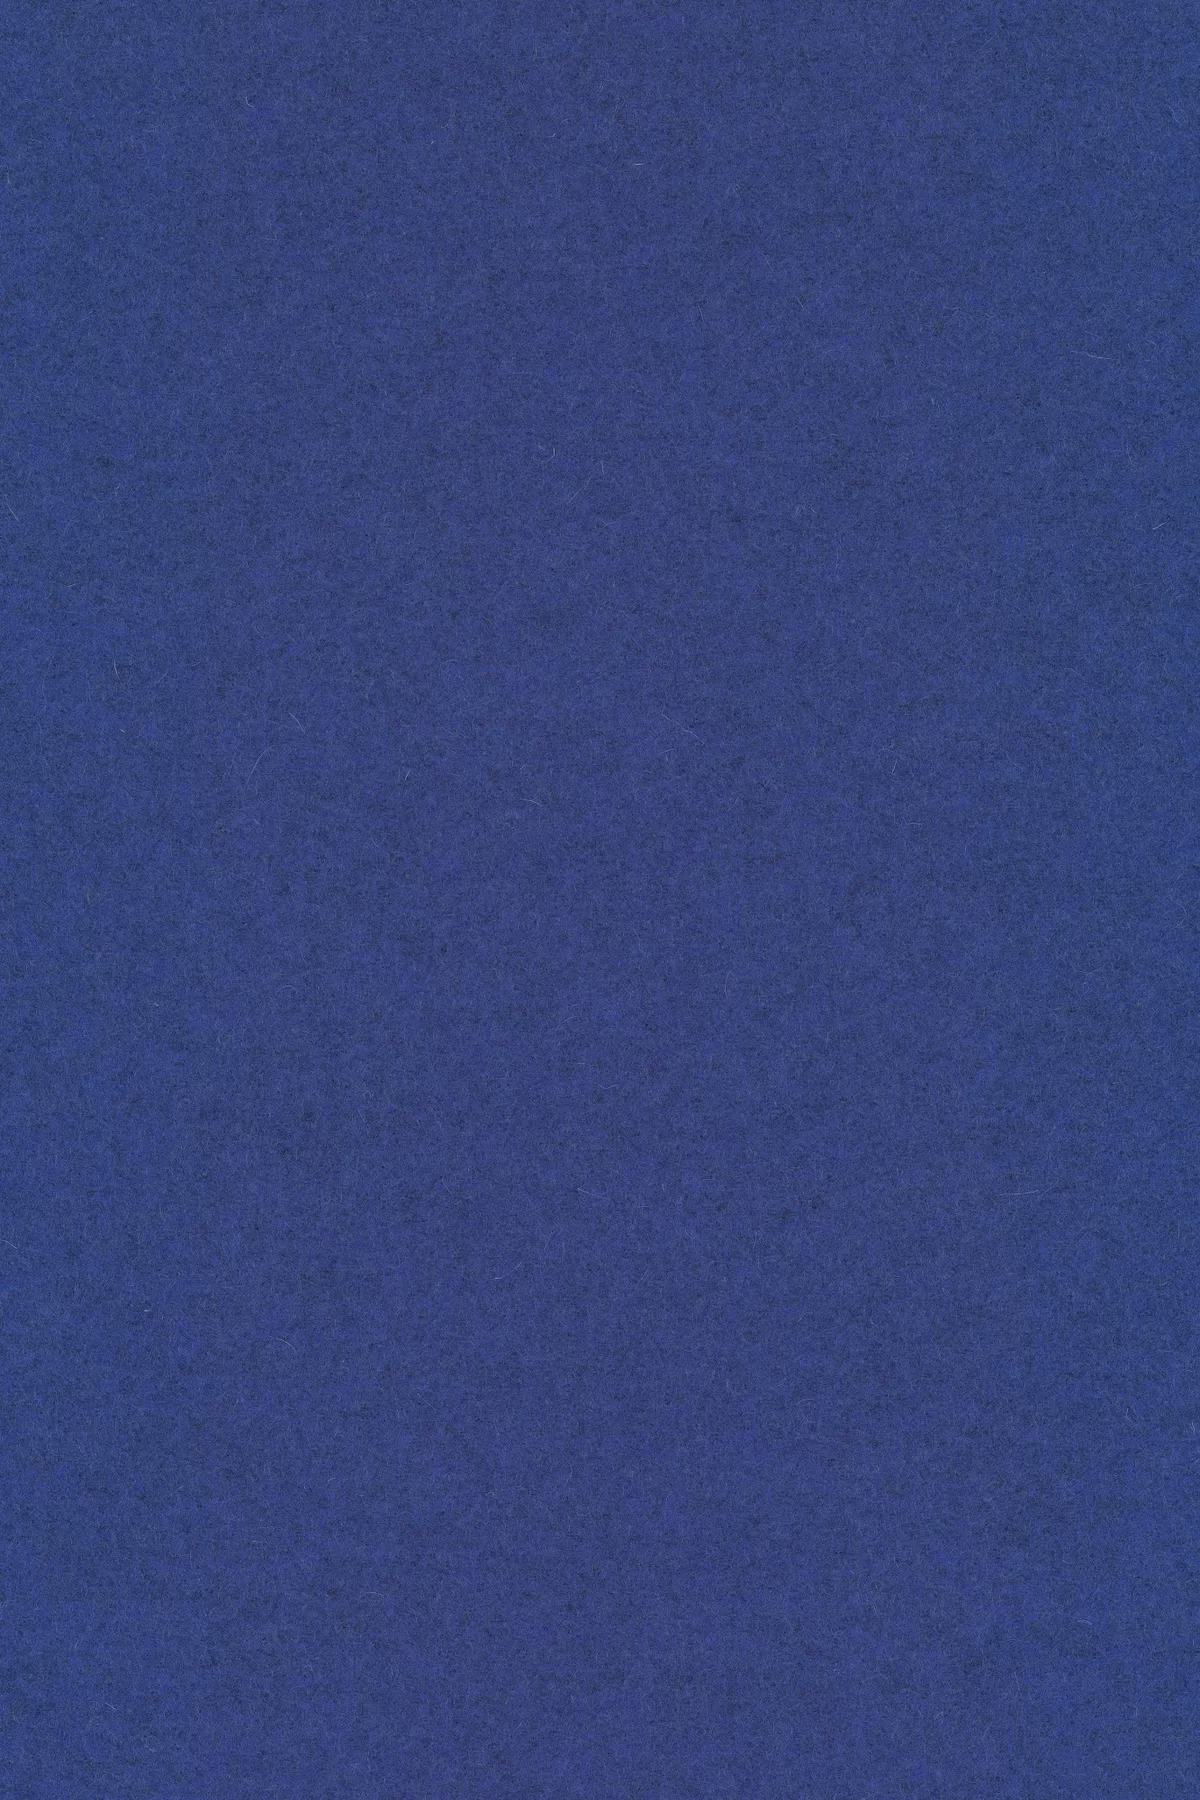 Fabric sample Divina Melange 3 747 blue